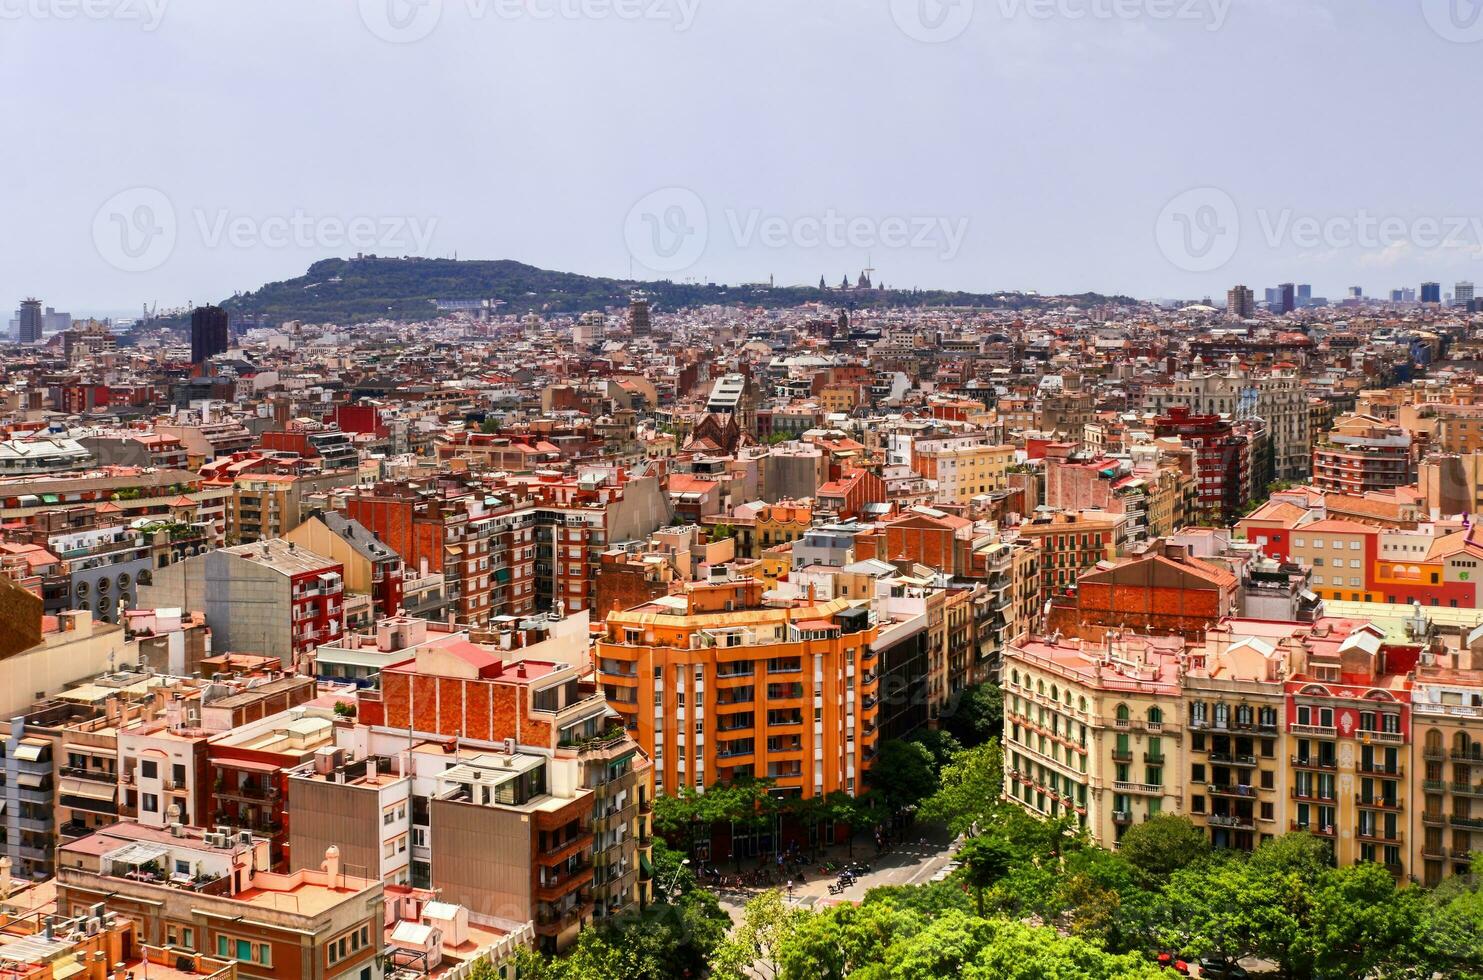 antenn se av skön stad barcelona i solig sommar väder. foto